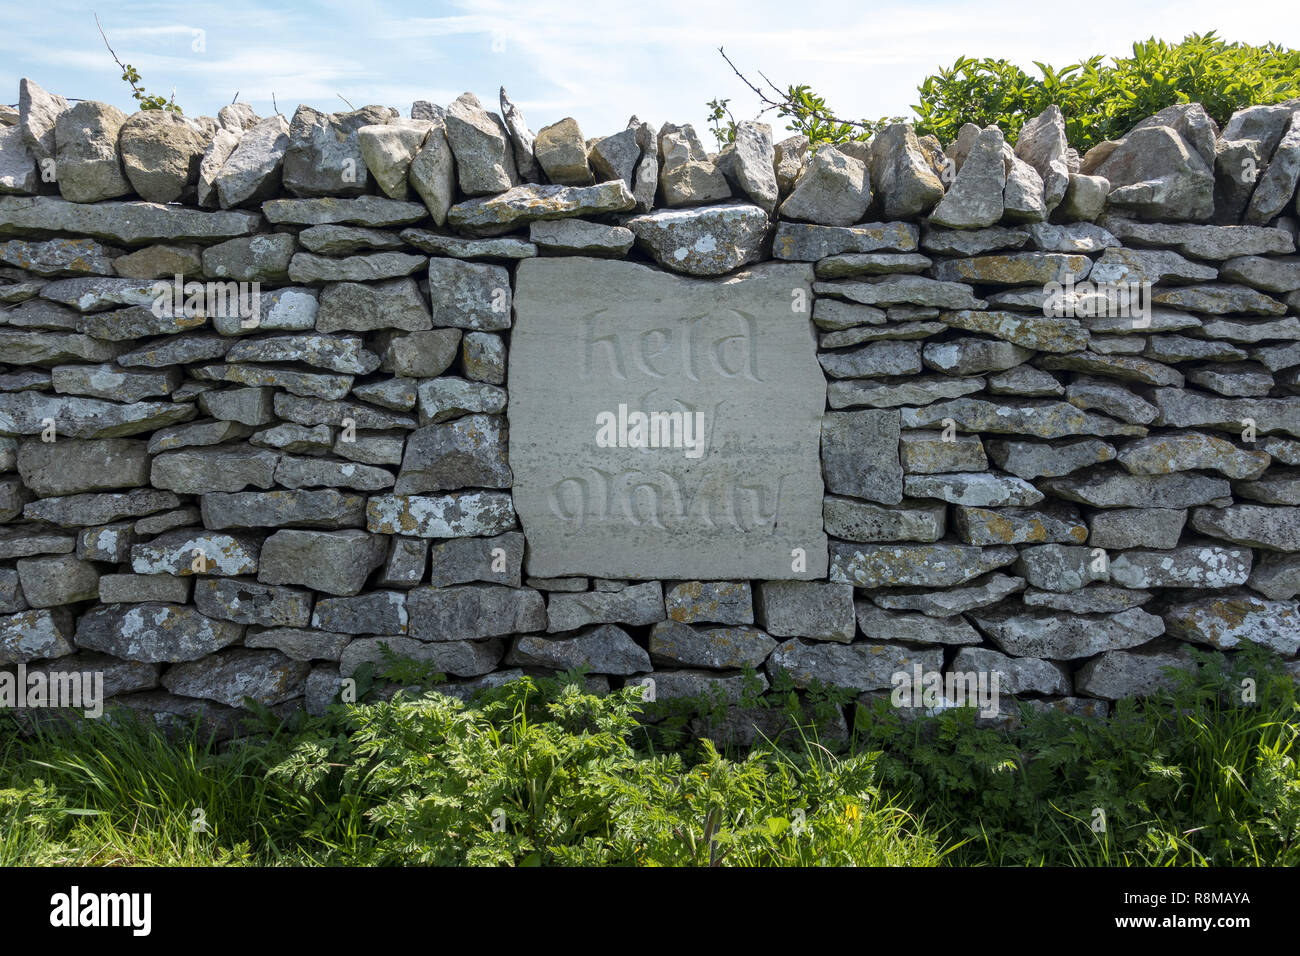 Un mur sec récemment restauré avec l'inscription « tenu par la gravité » sur l'île de Purbeck, Dorset, Angleterre, Royaume-Uni Banque D'Images